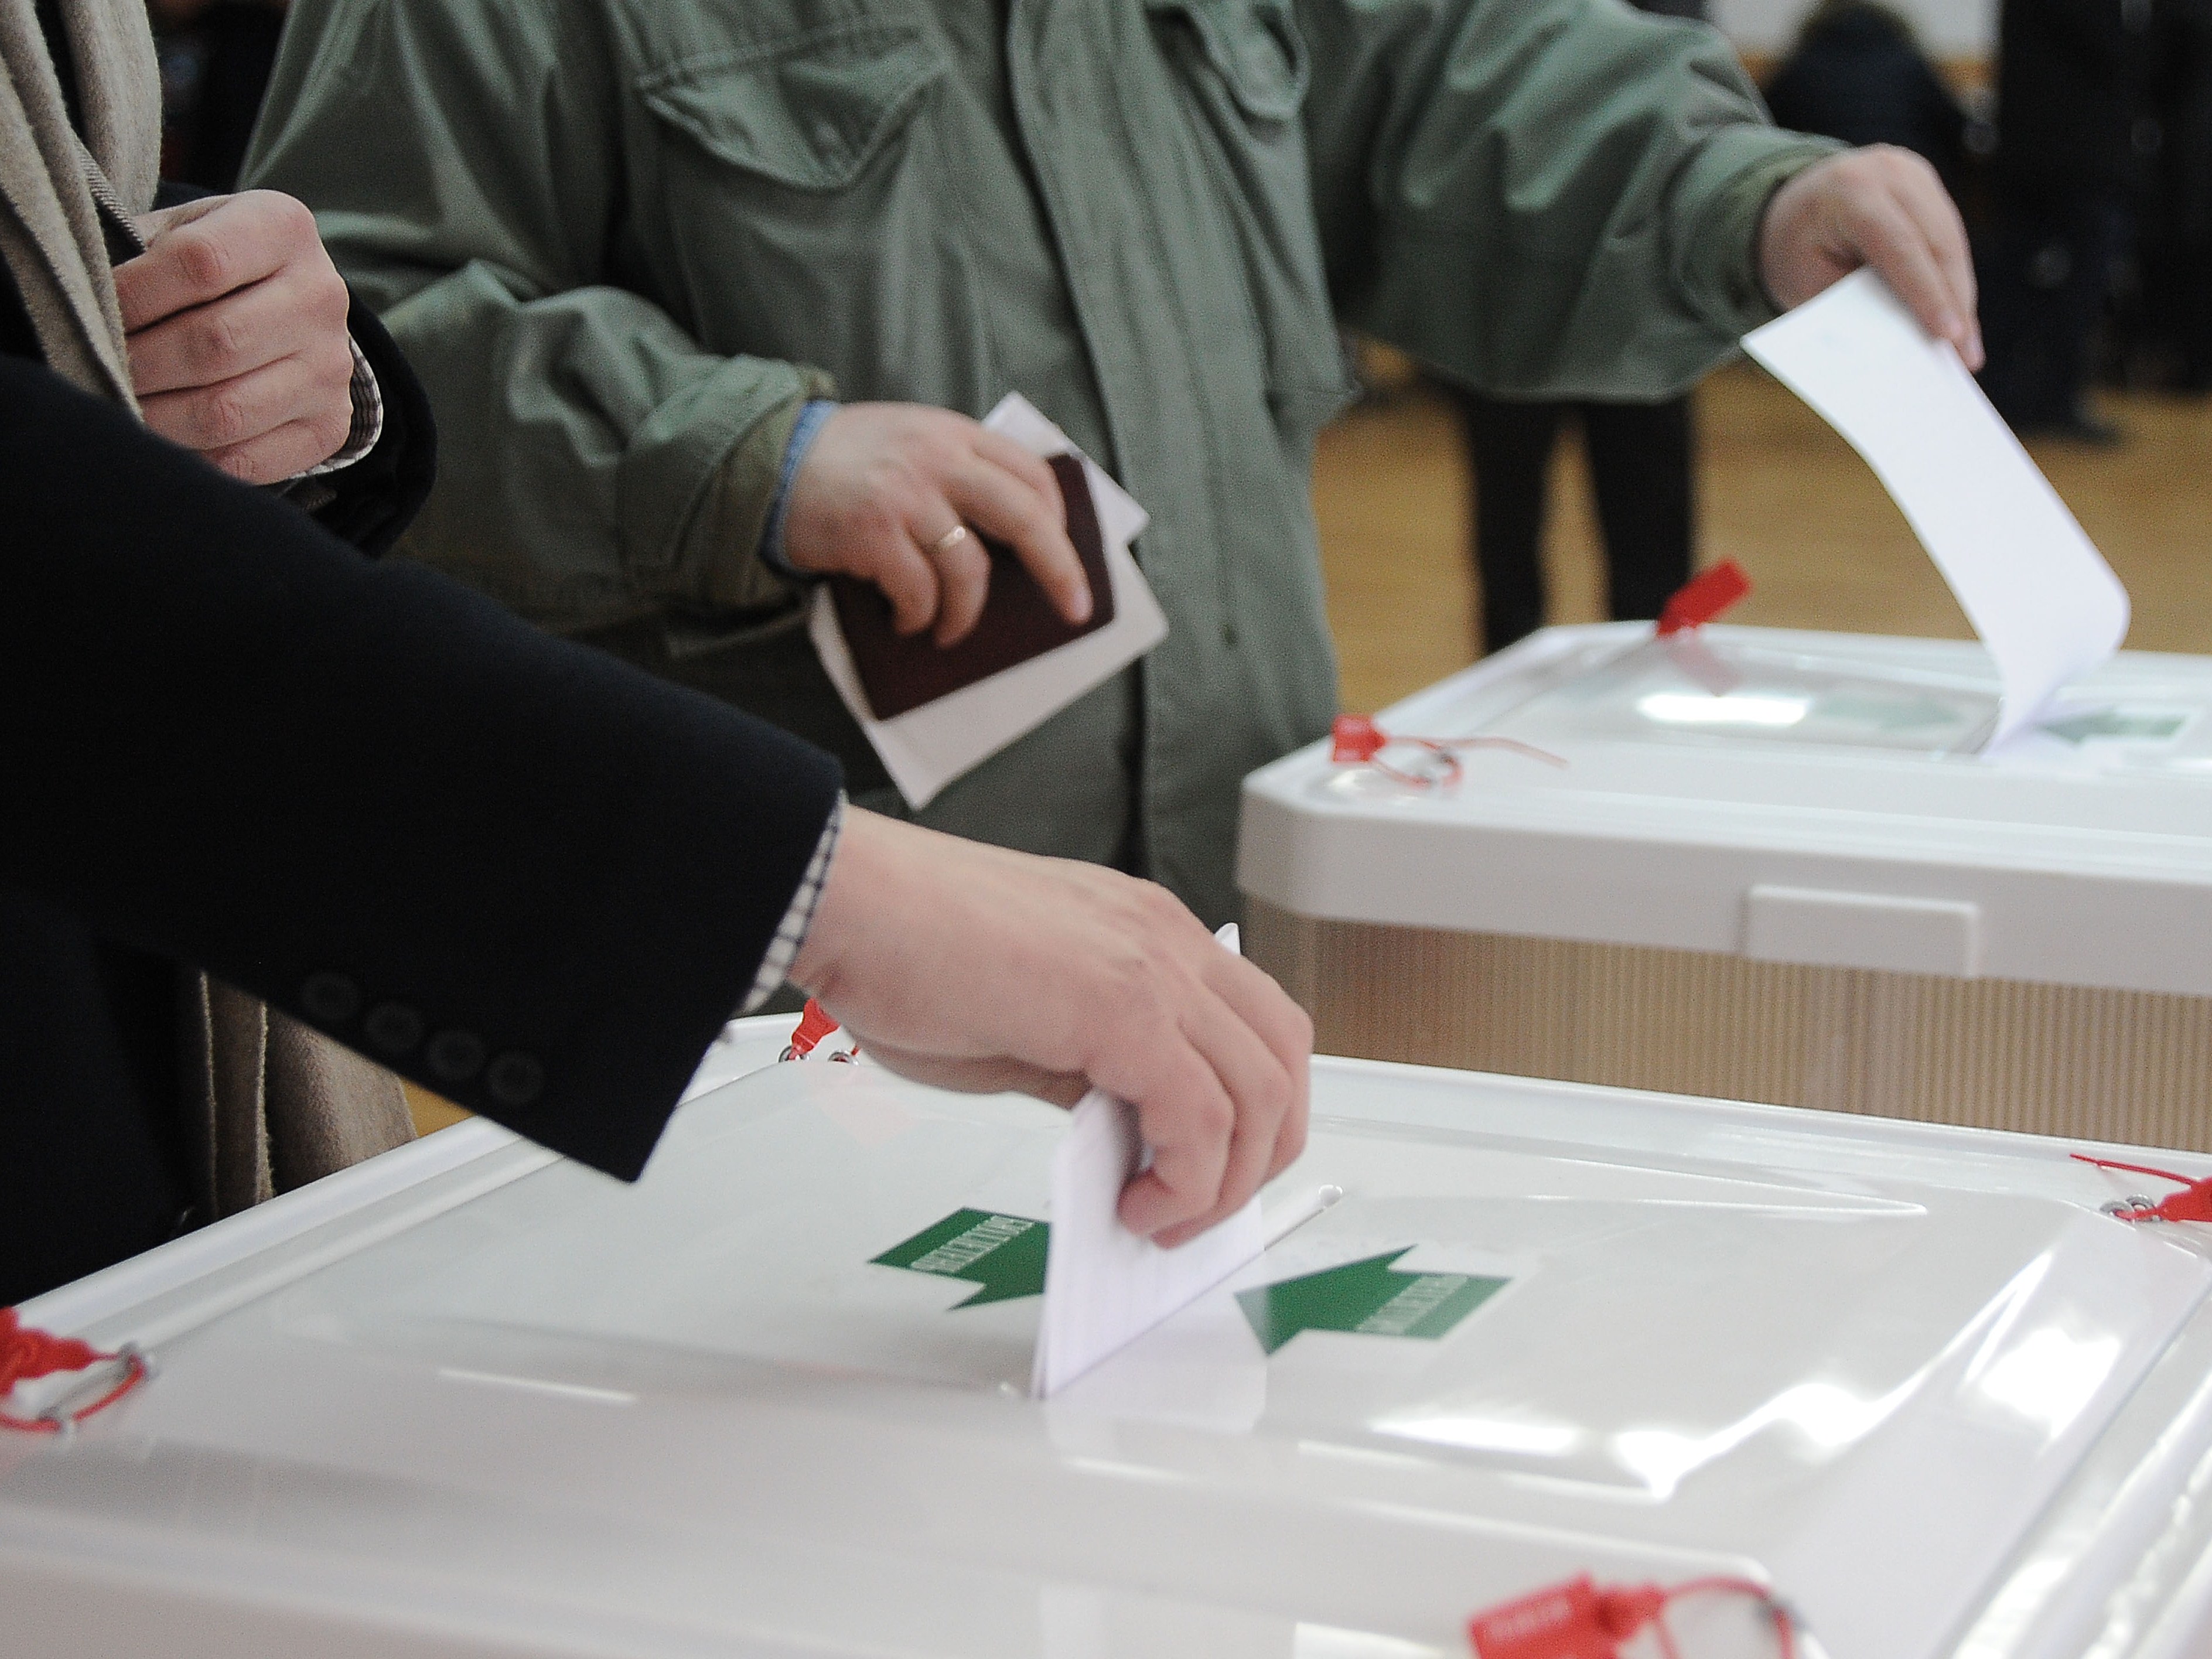 Сажать на десять лет за фальсификацию выборов предложил депутат КПРФ